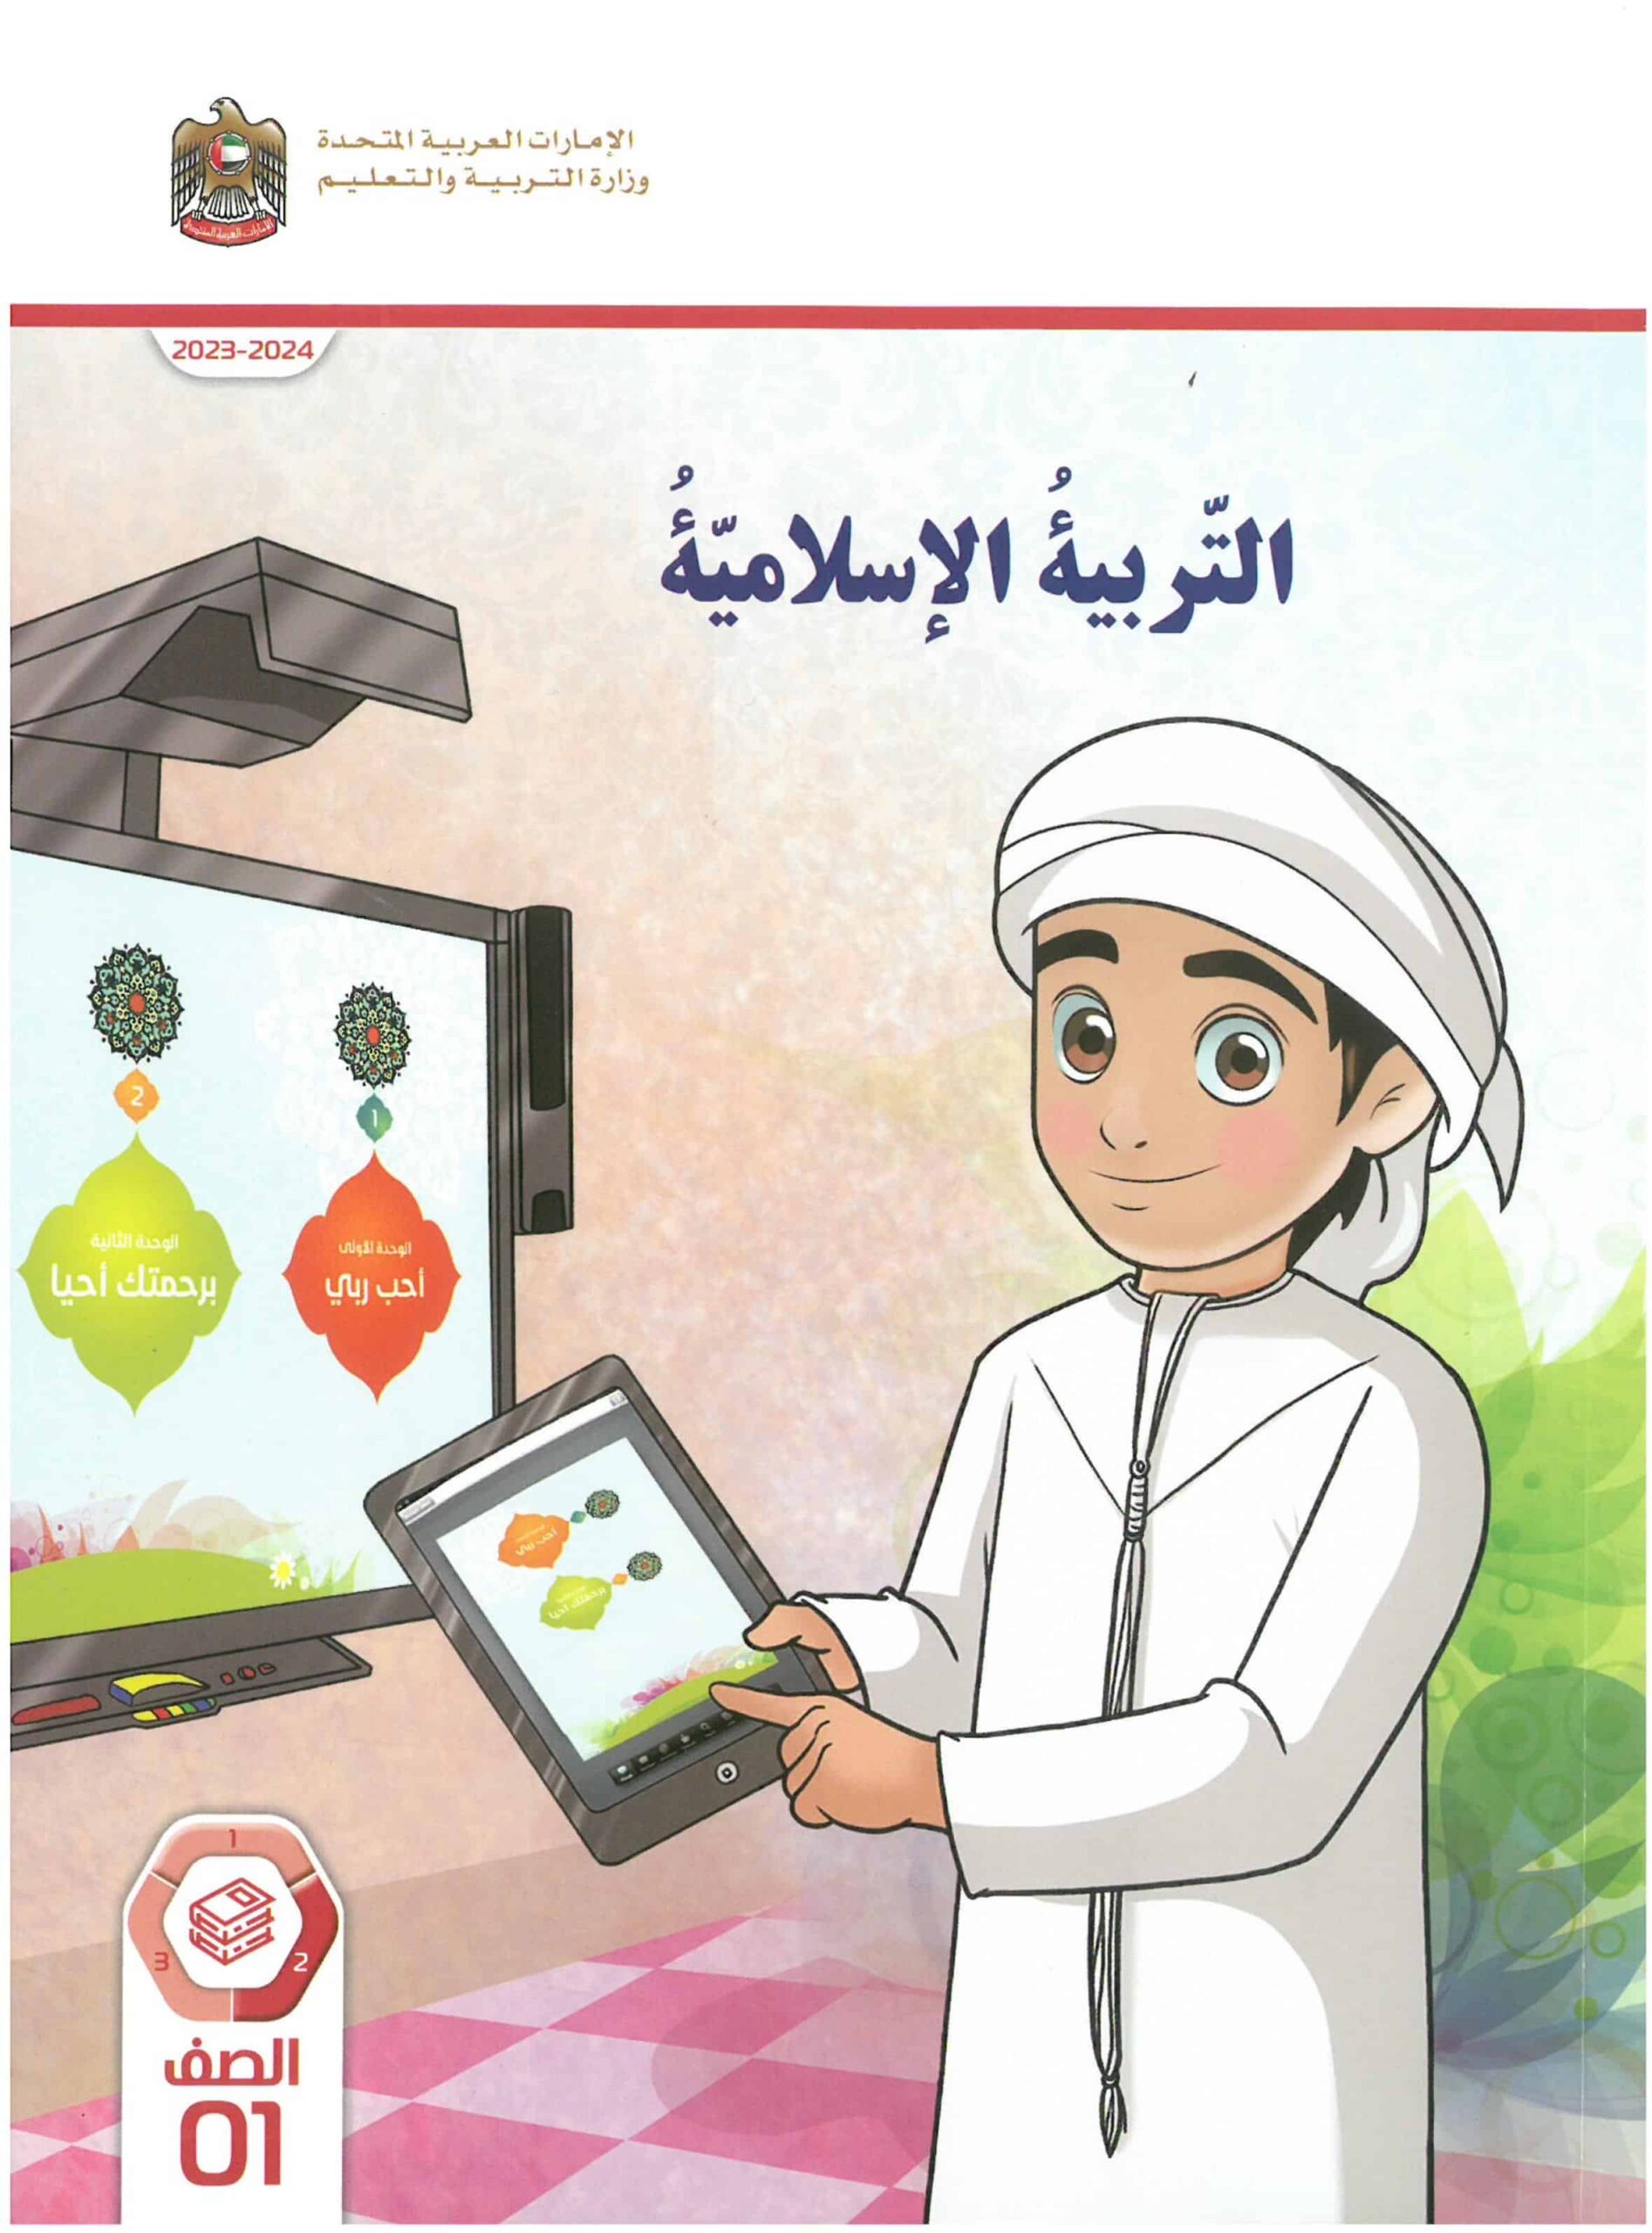 كتاب الطالب التربية الإسلامية الصف الأول الفصل الدراسي الثاني 2023-2024